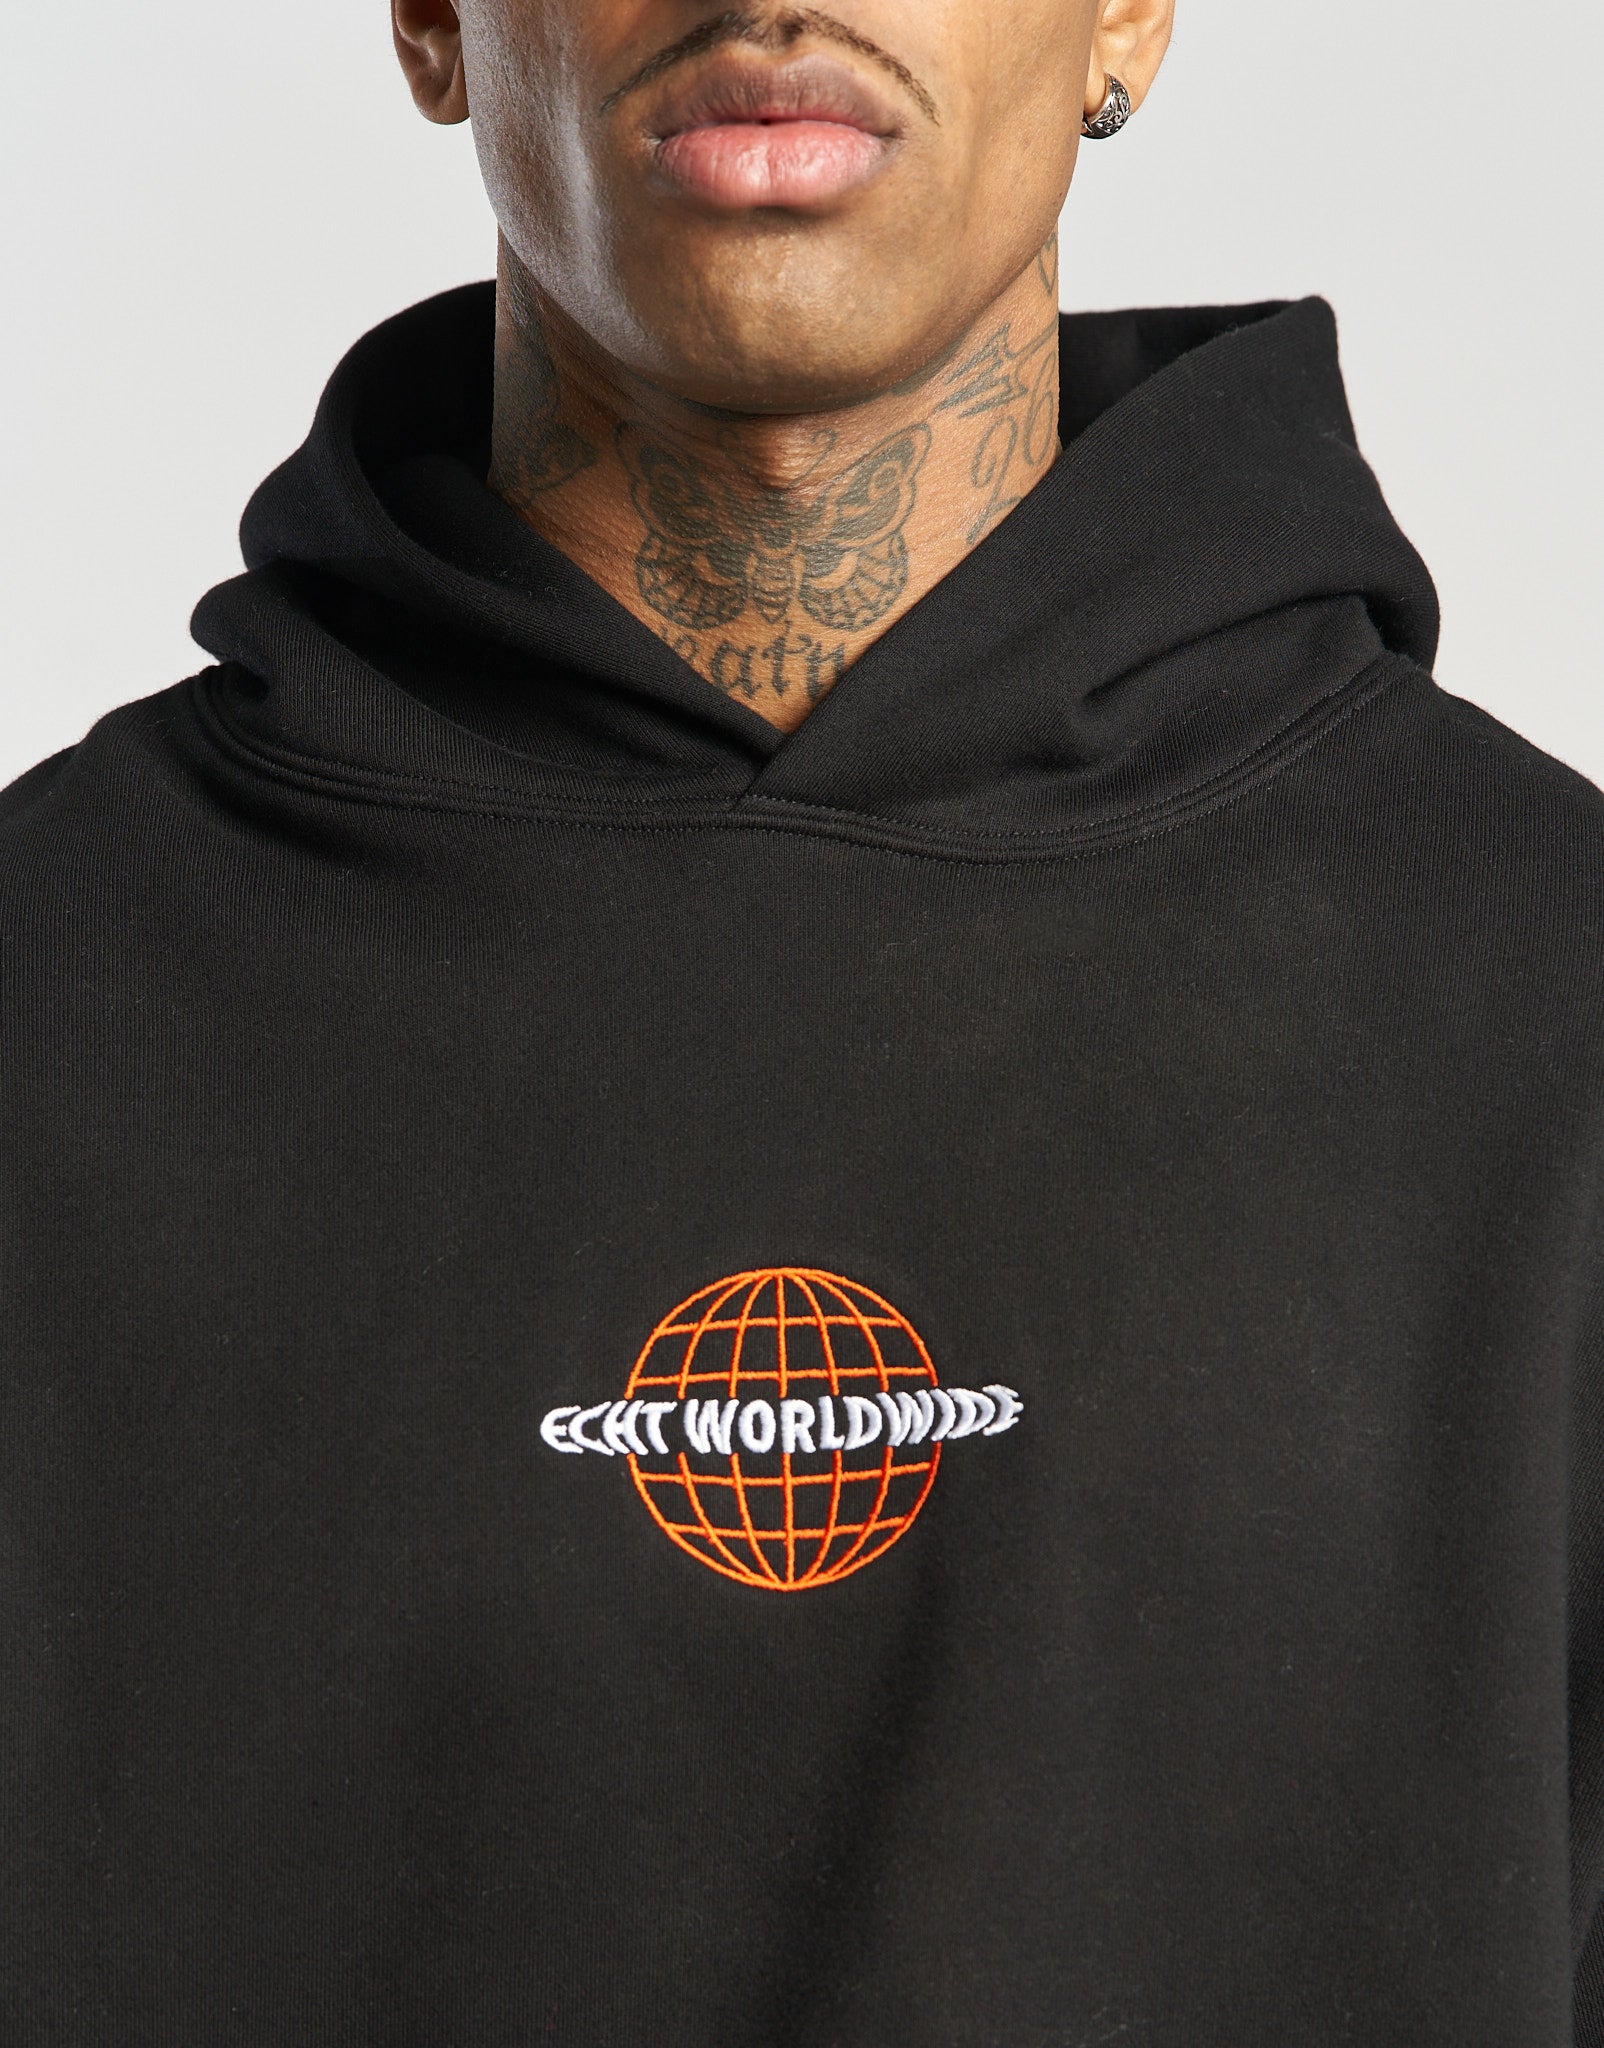 Worldwide Hoodie - Black/Orange